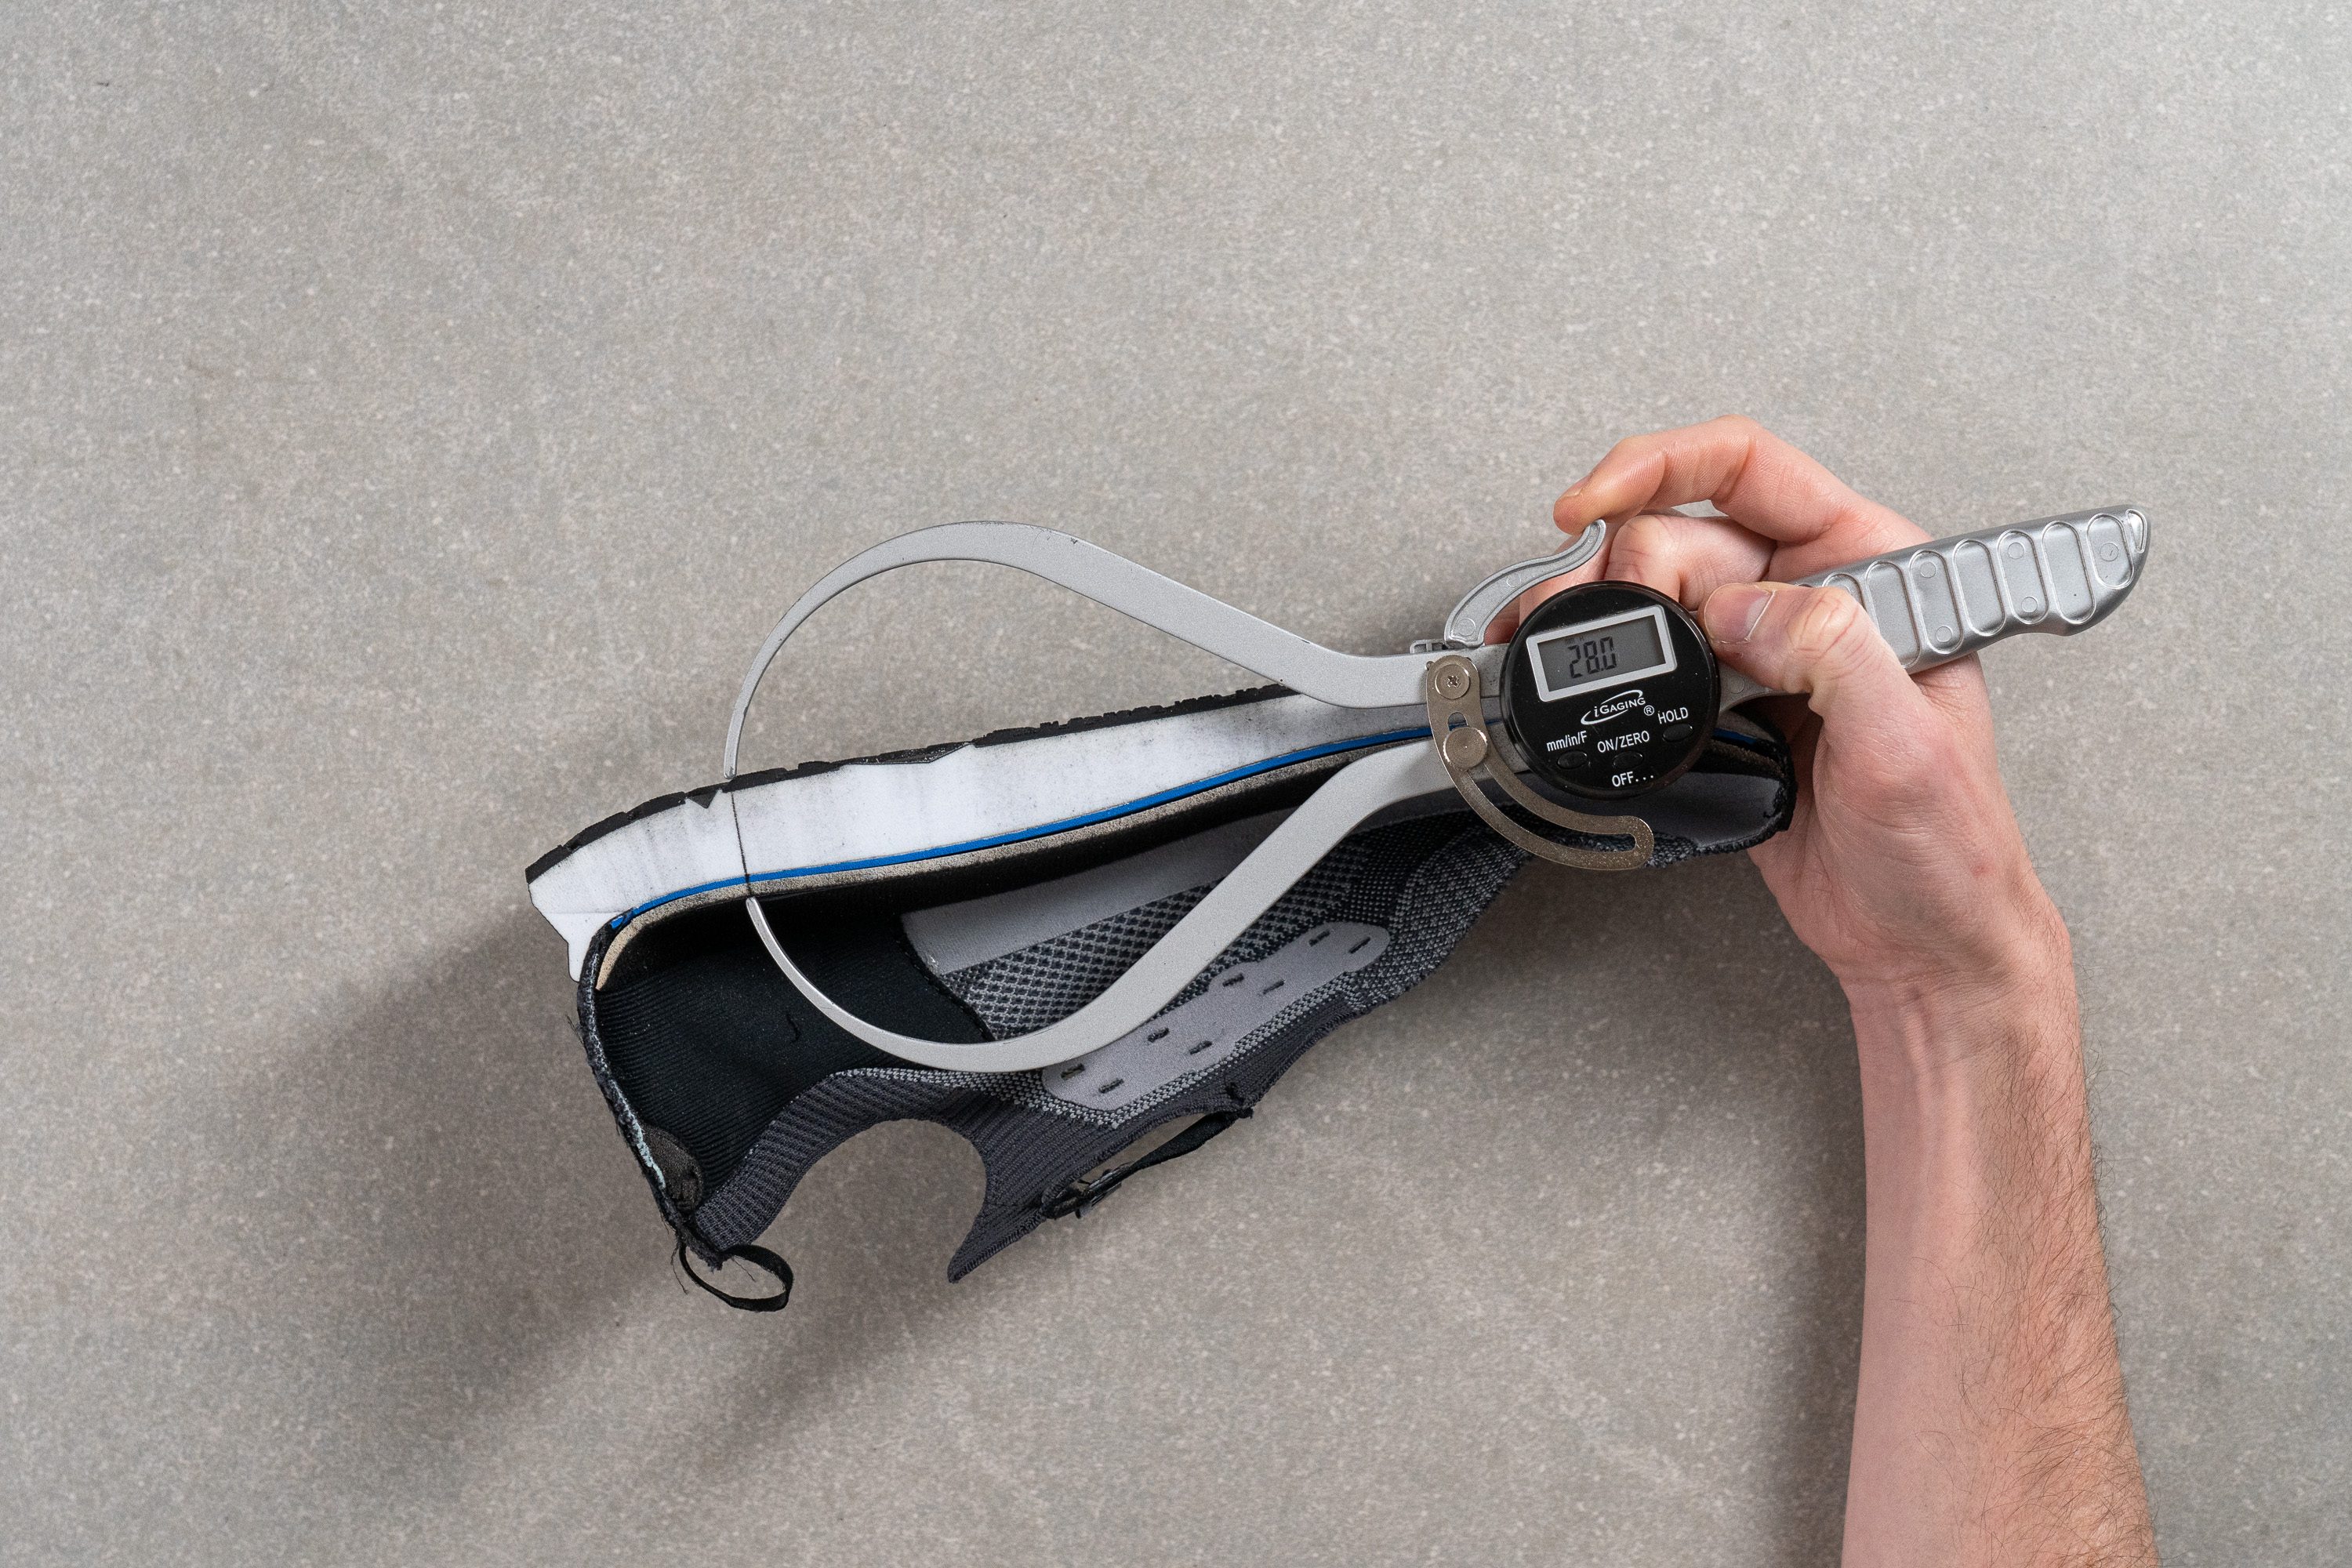 zapatillas de running GTS brooks entrenamiento tope amortiguación Heel stack measure